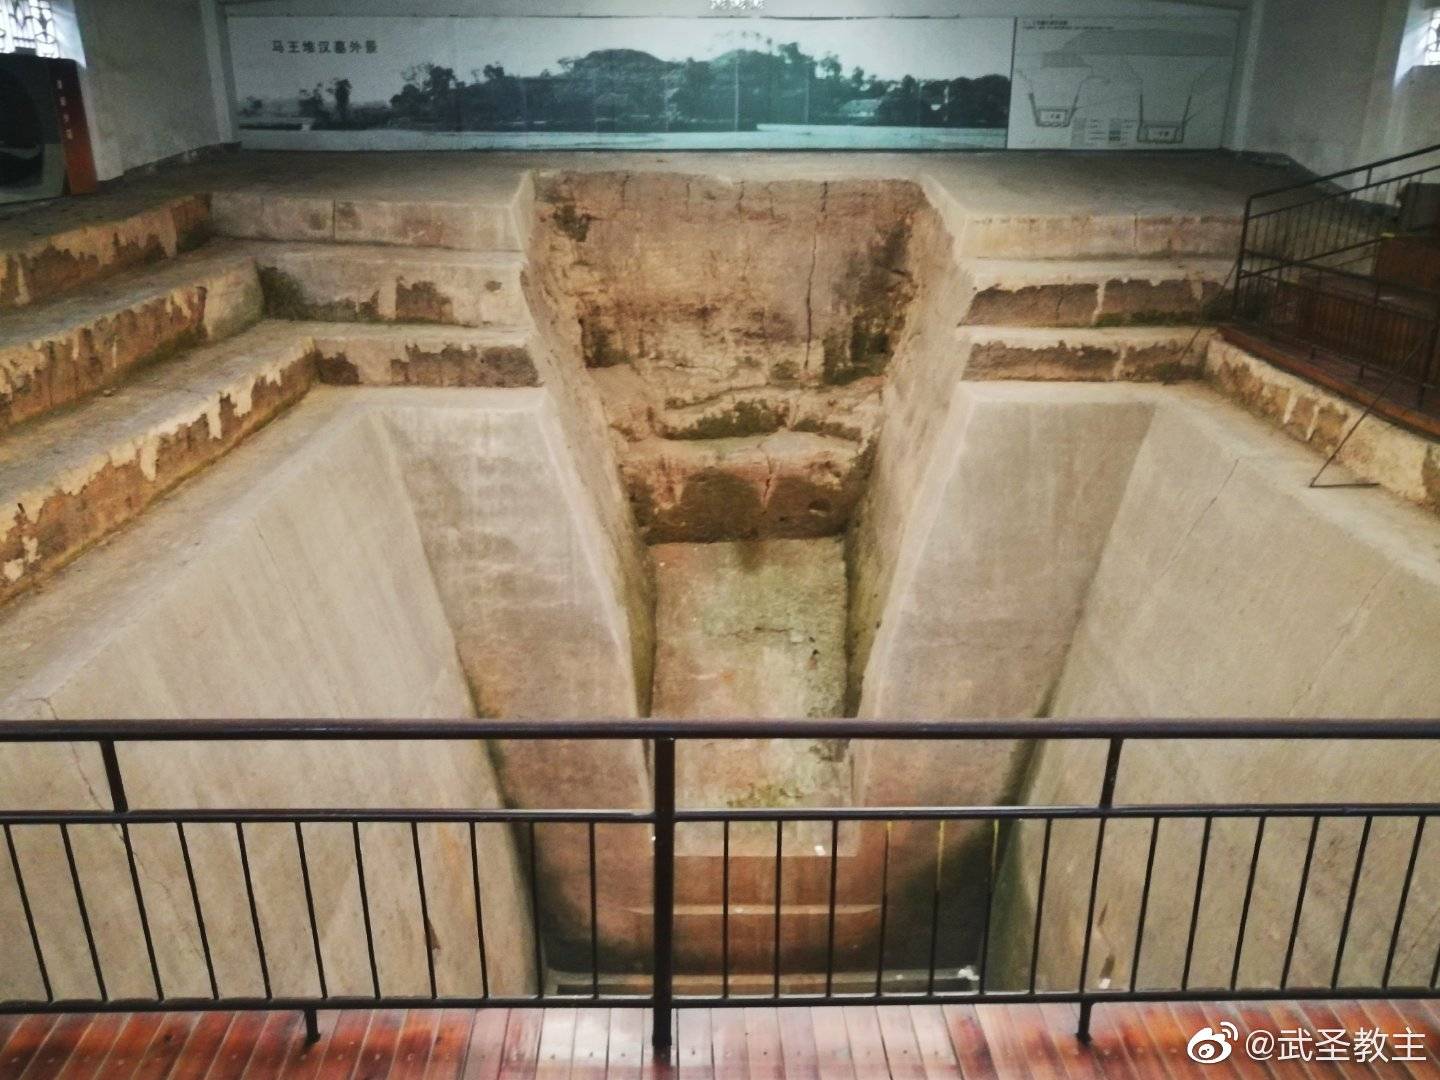 【携程攻略】长沙马王堆汉墓遗址景点,就是有两个大大的墓坑，文物都搬到博物馆里了。门票两块钱。。。如果…